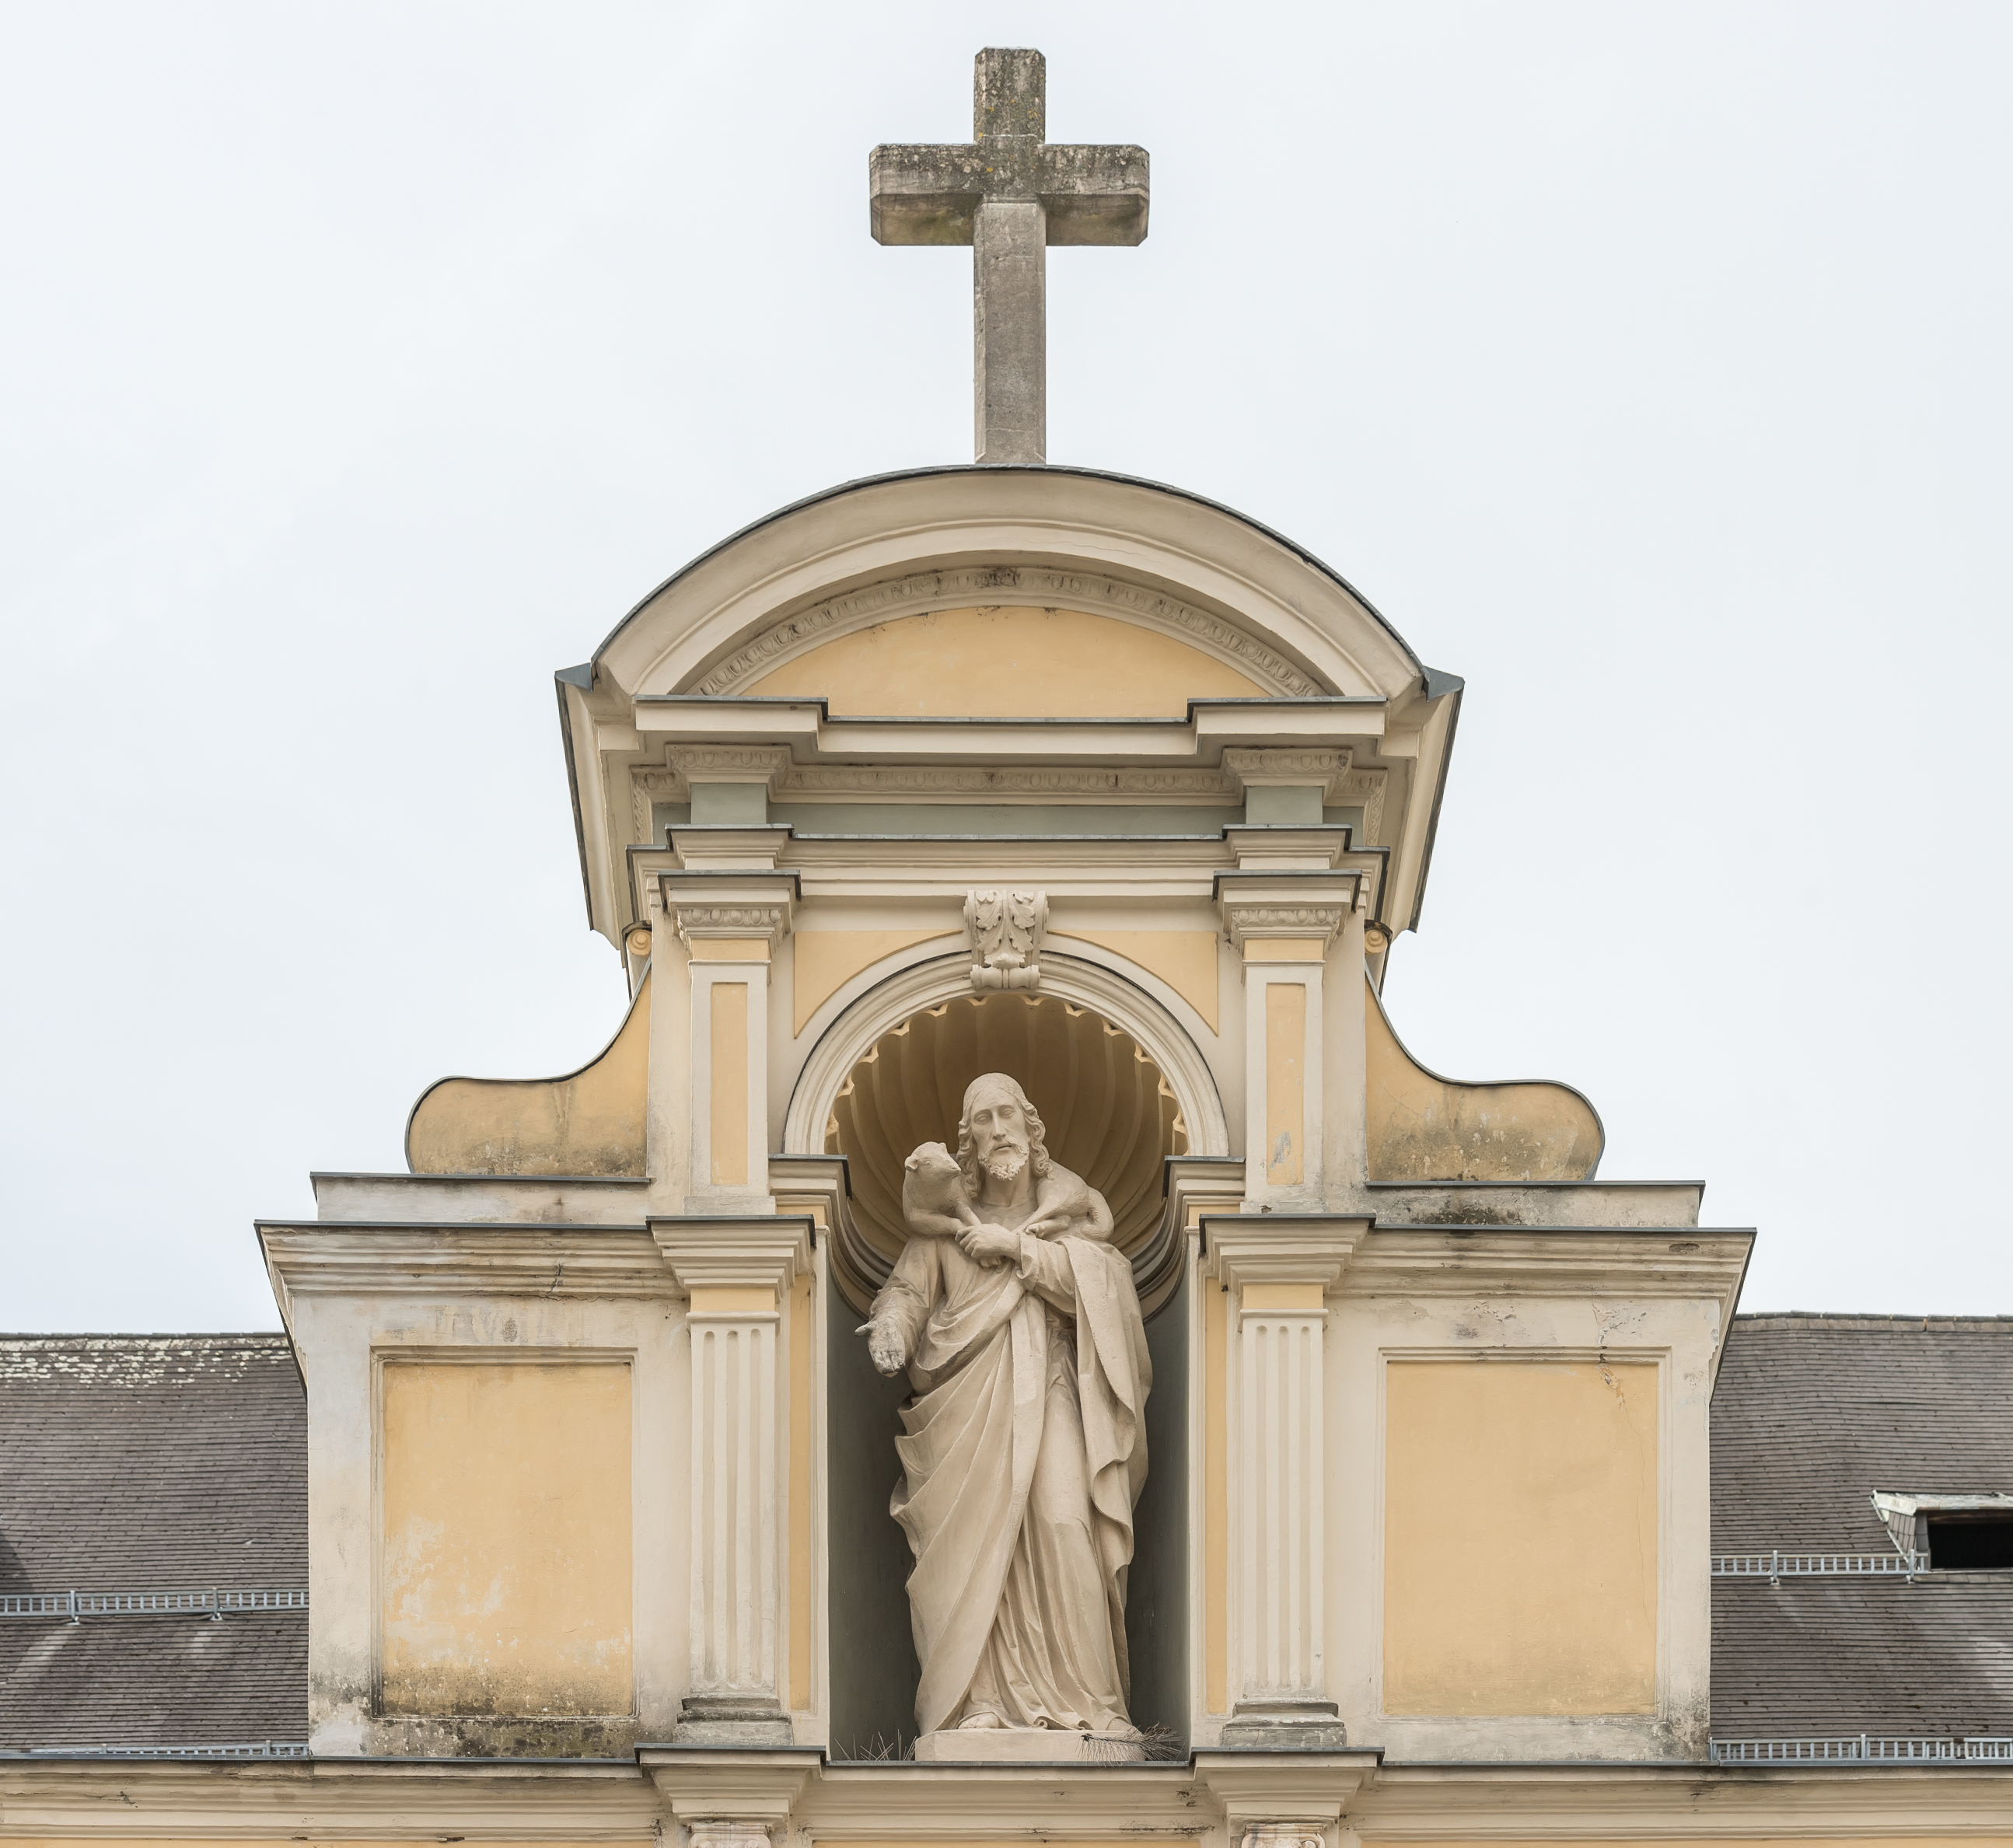 Klagenfurt Lidmanskygasse Domkirche Portalschauwand Aufsatznische Christus als Guter Hirte 15072016 3830